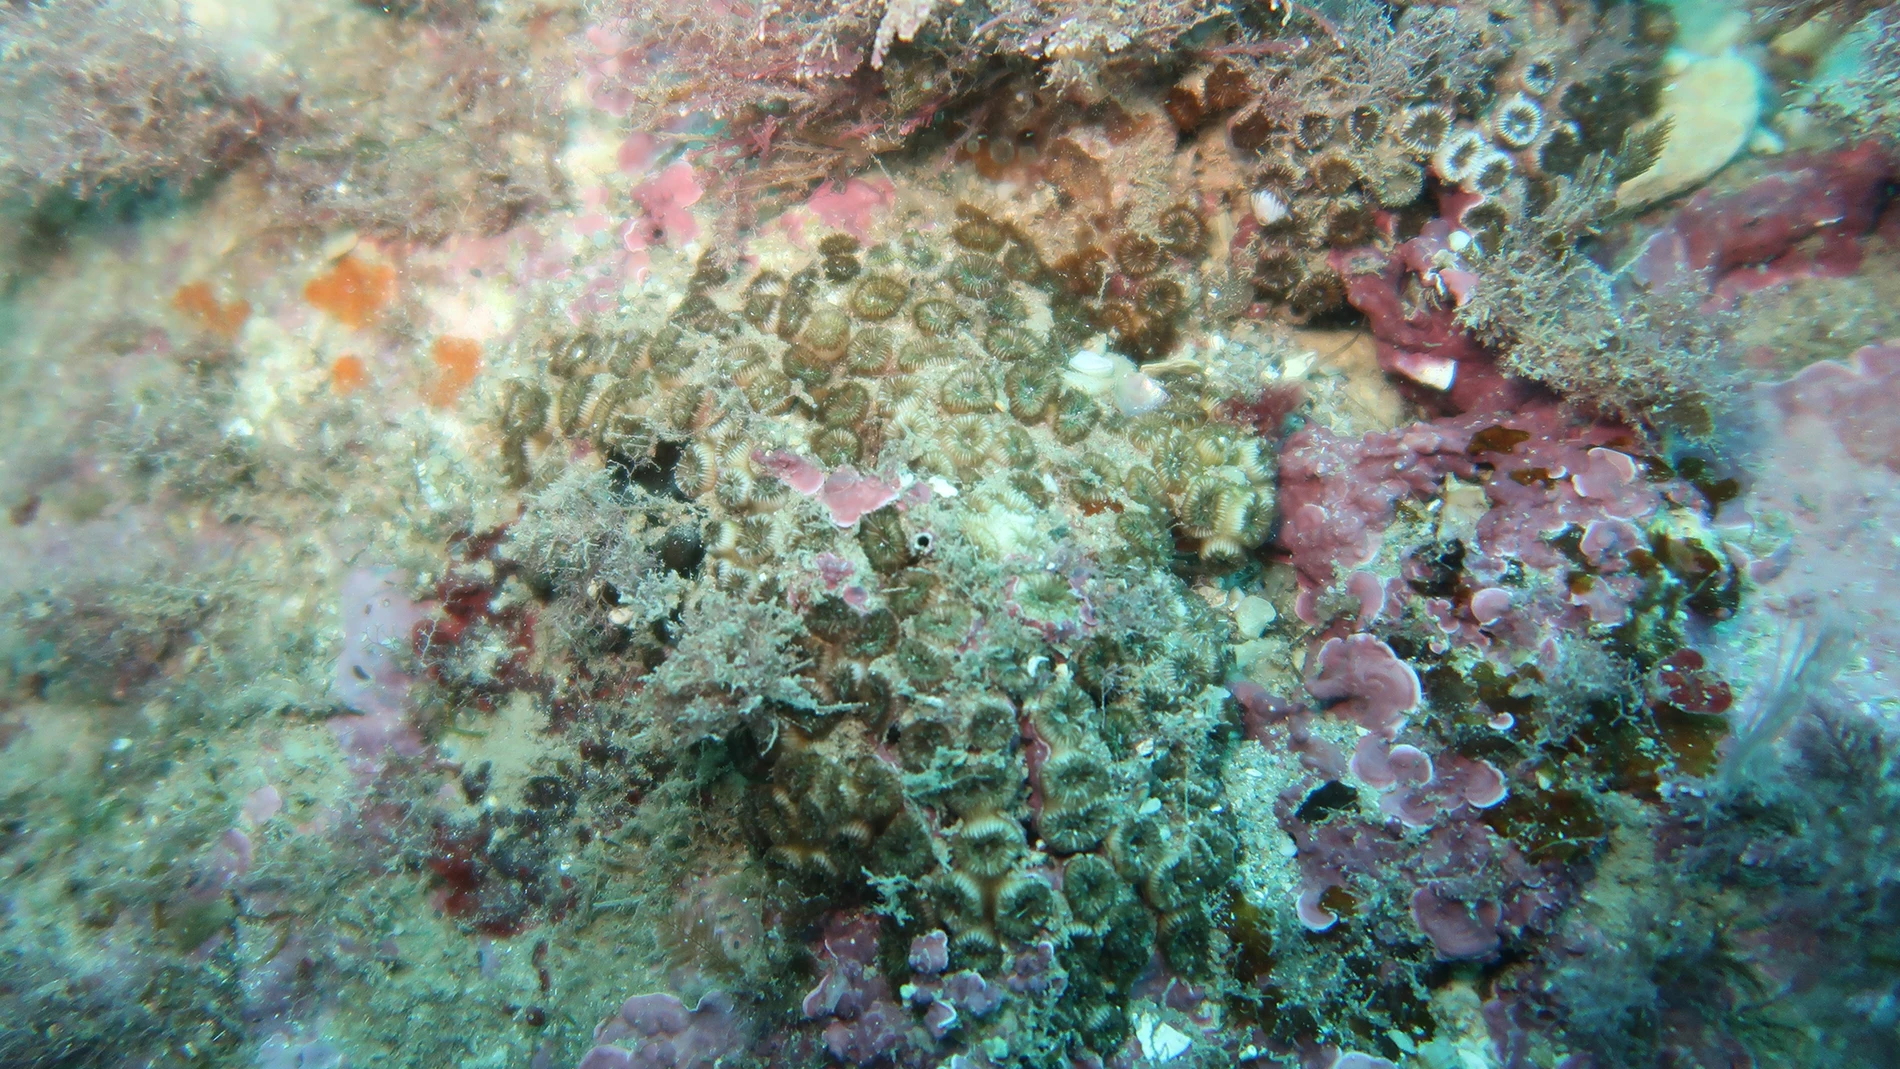 El color blanquecino que presentan los corales evidencian que el aumento de la temperatura del mar provoca que se desarrollen bacterias que matan al ecosistema marino